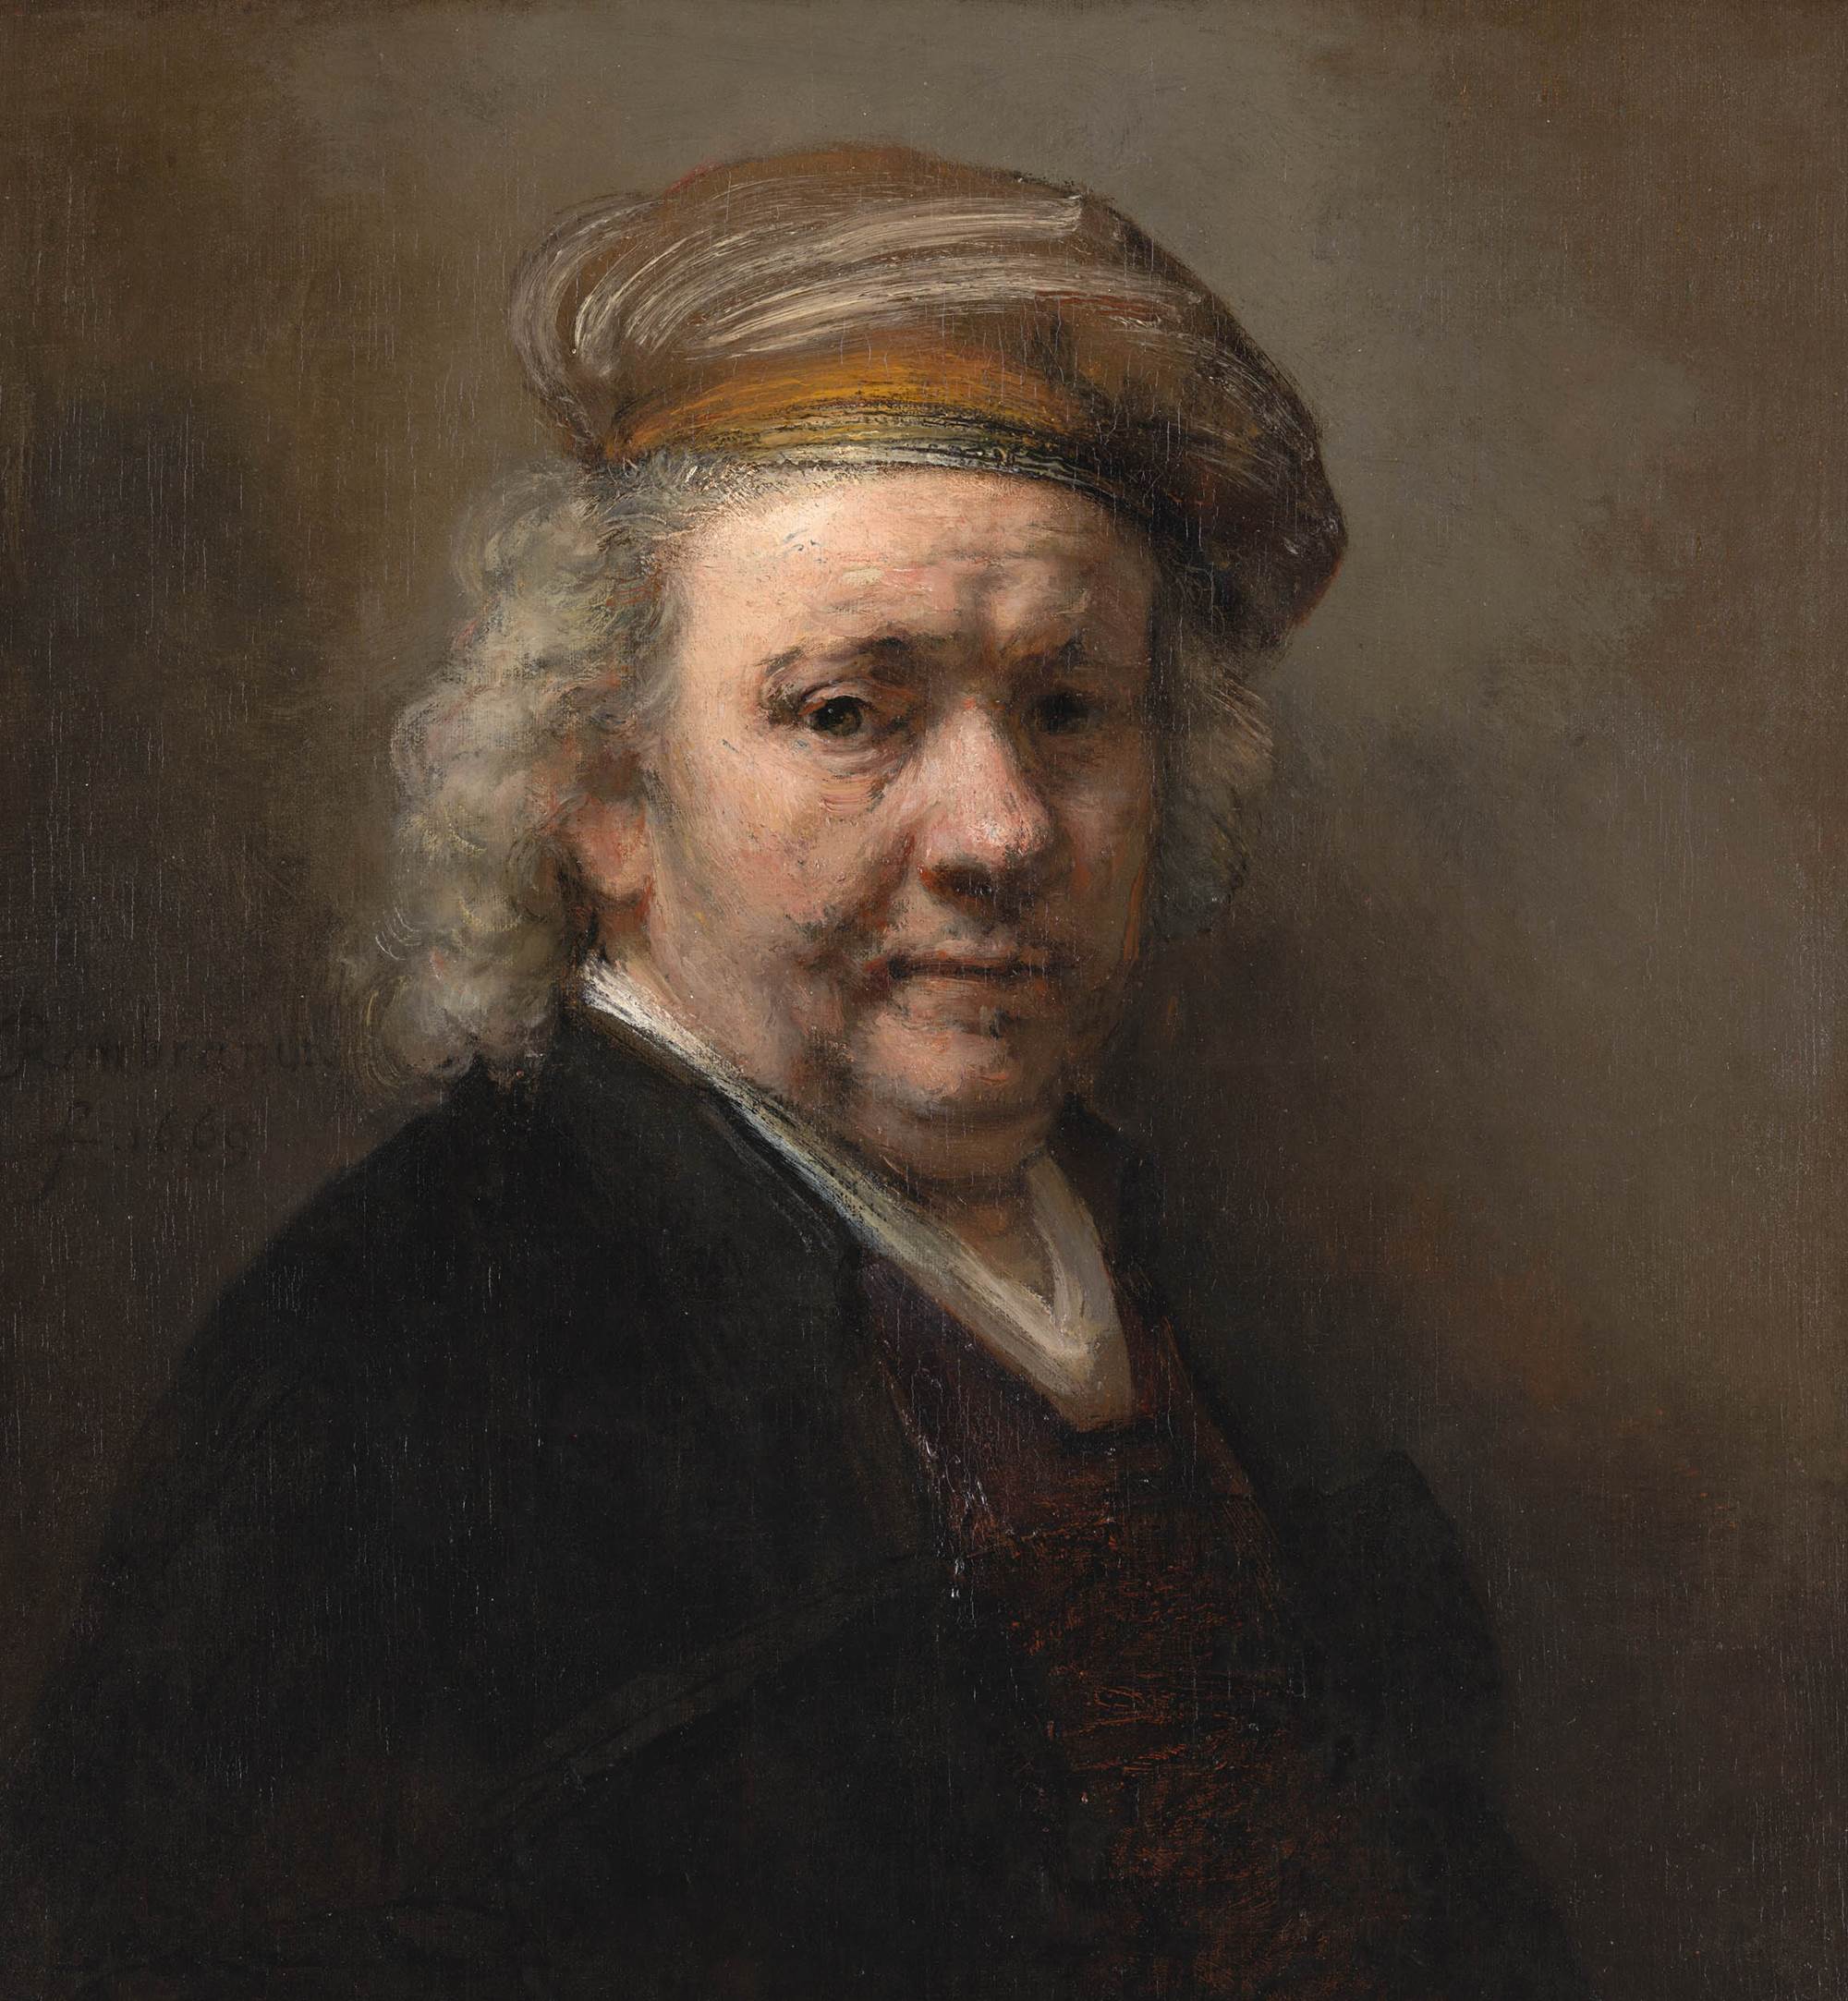 Rembrandt van Rijn, Self-portrait, 1669, Mauritshuis, The Hague, Netherlands.